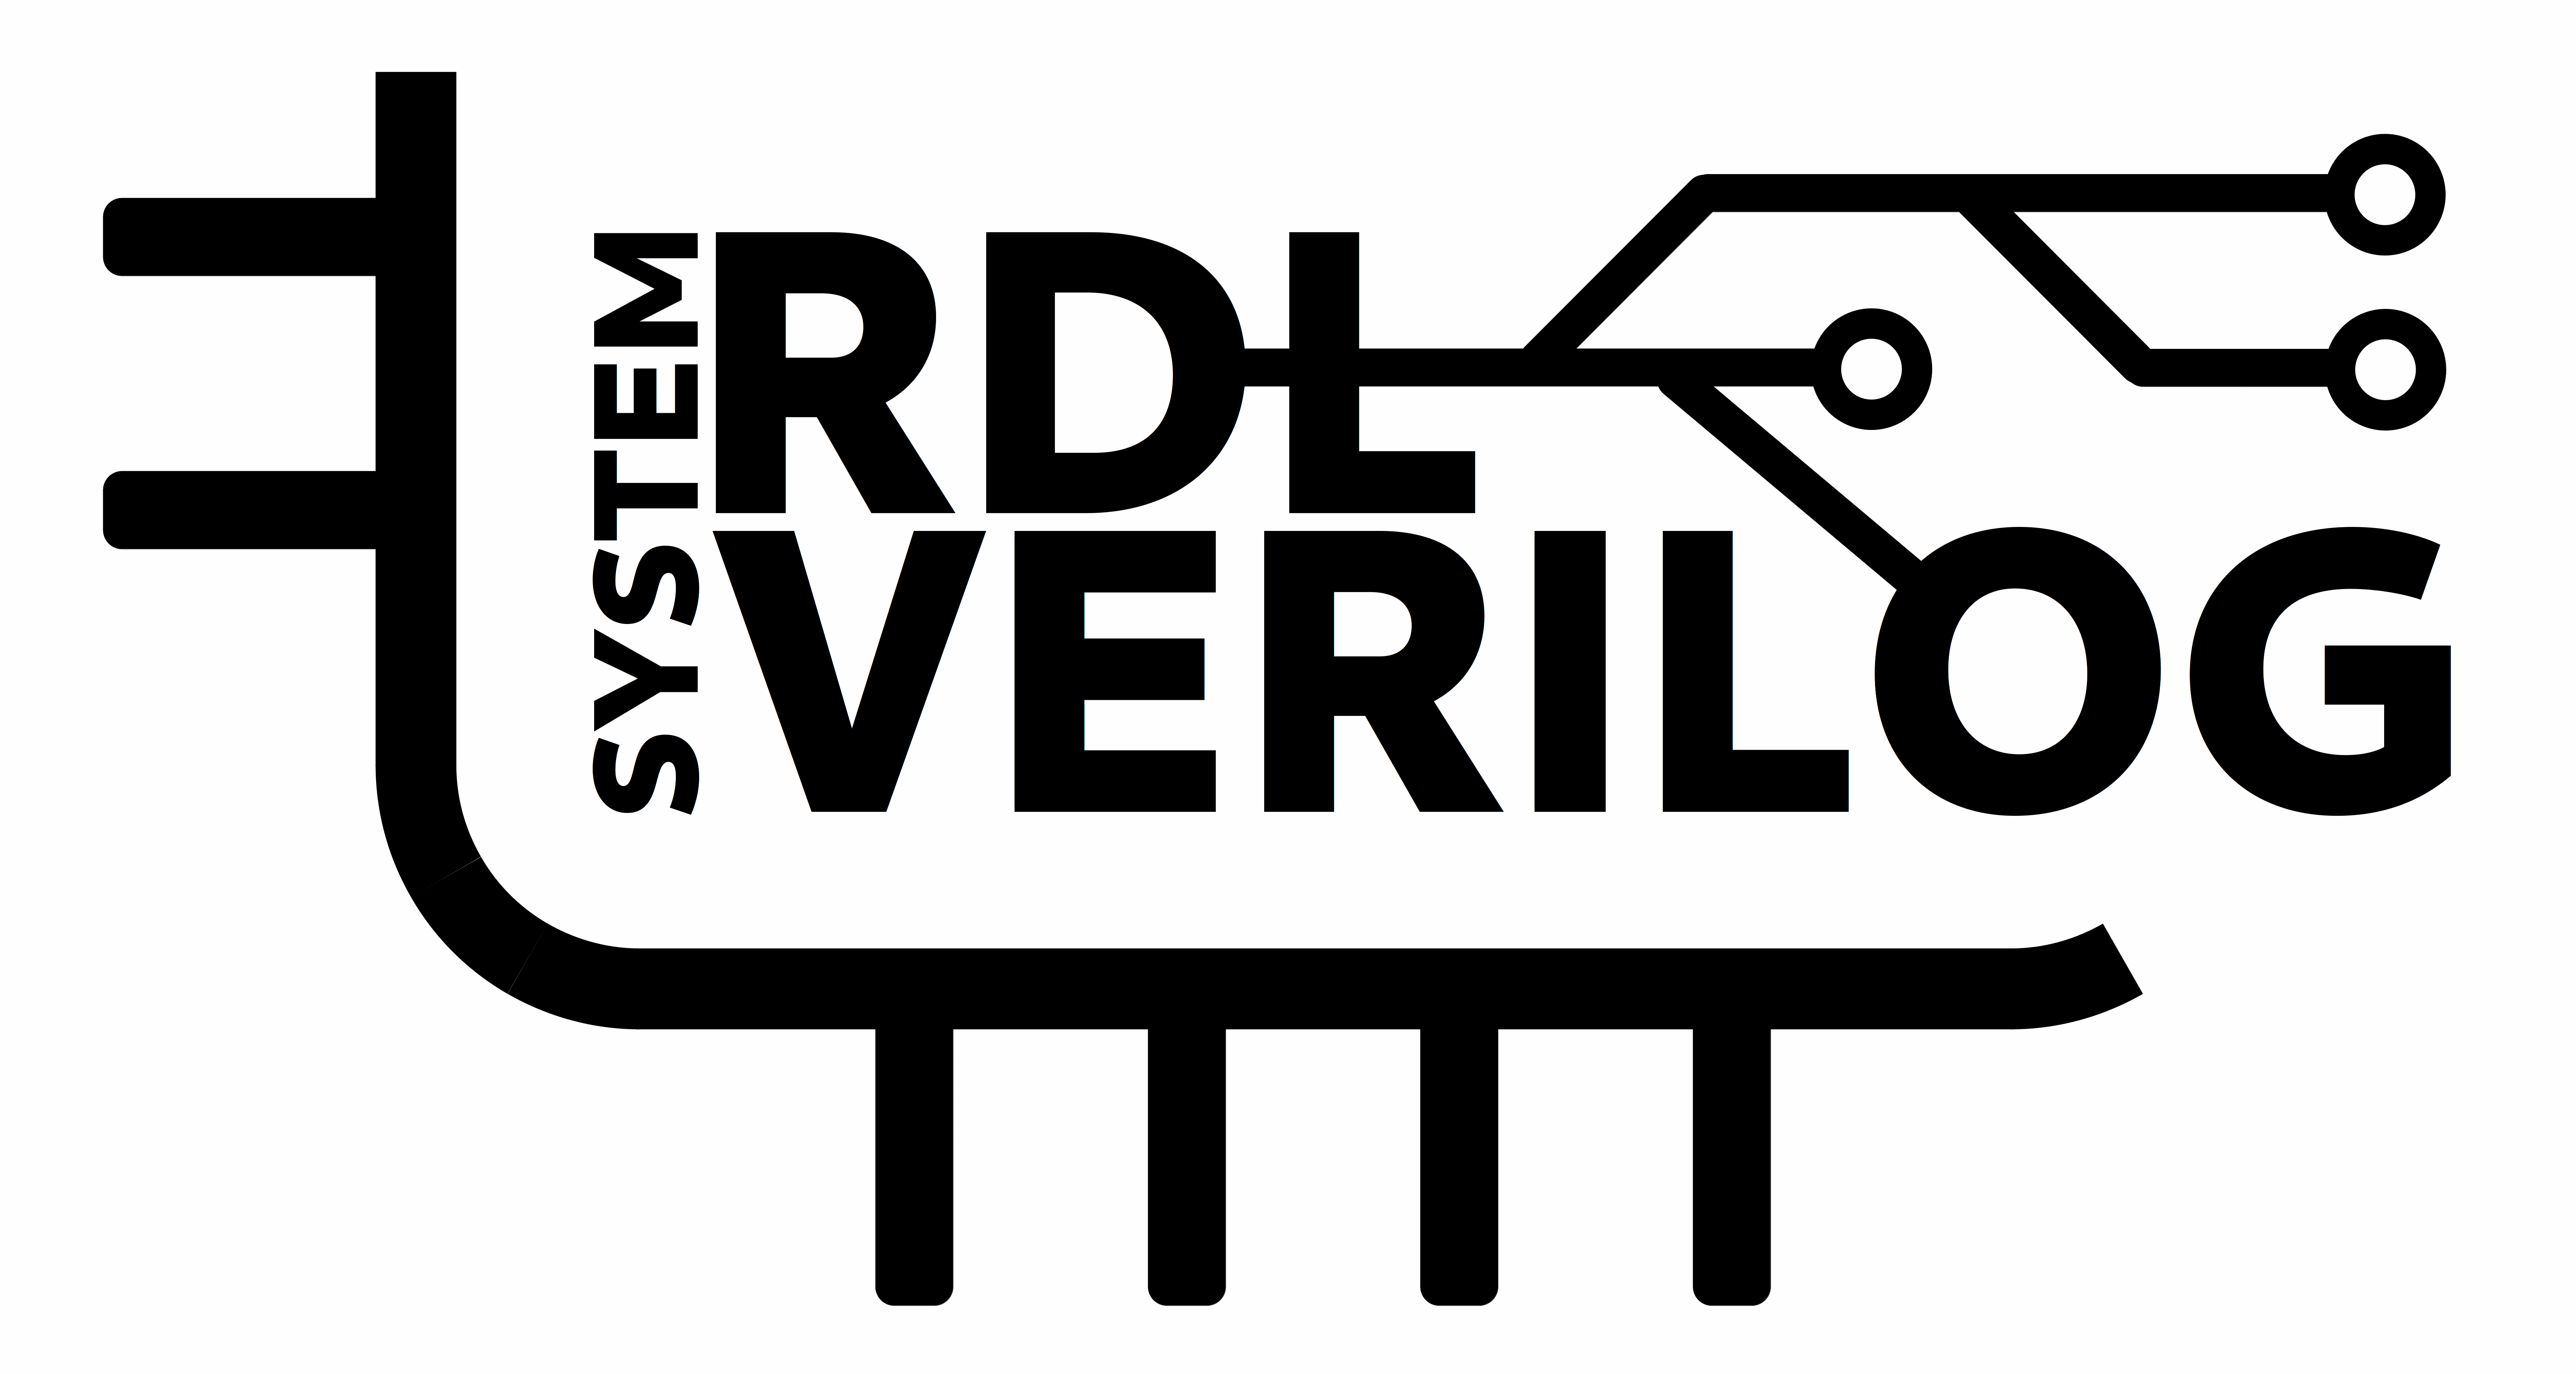 srdl2sv logo